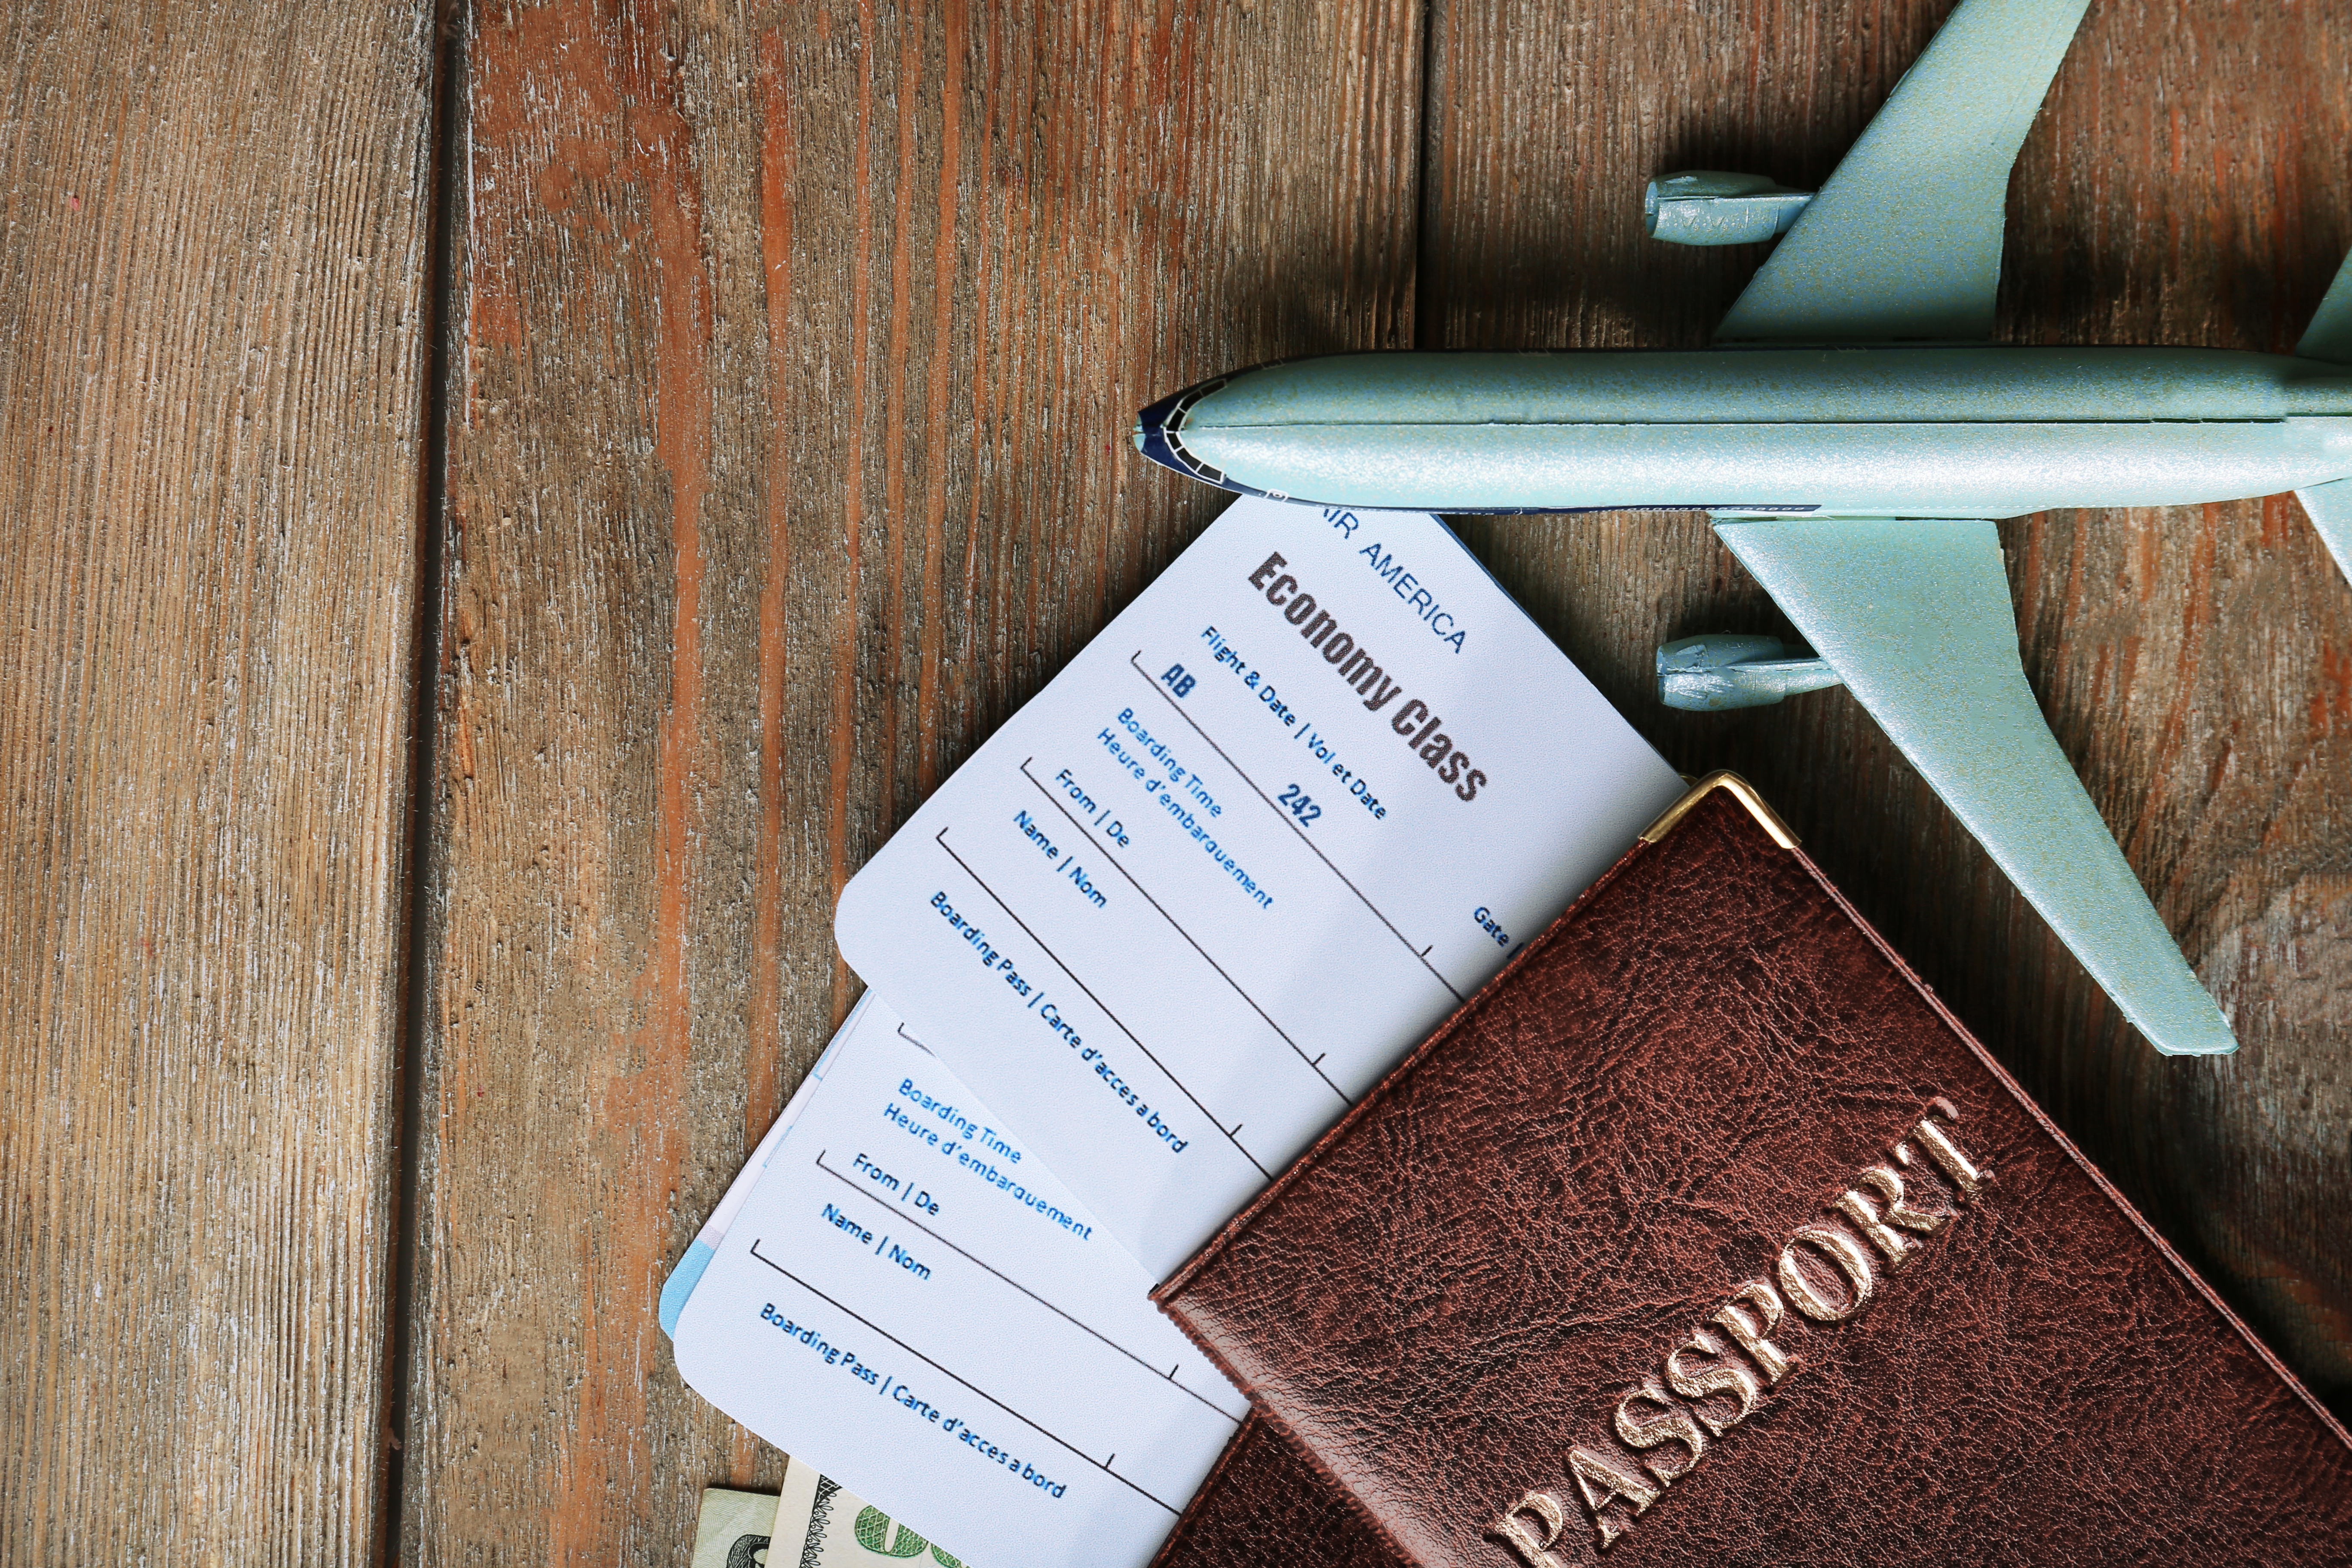 Deux passeports avec des billets d'avion et une figurine d'avion | Source : Shutterstock